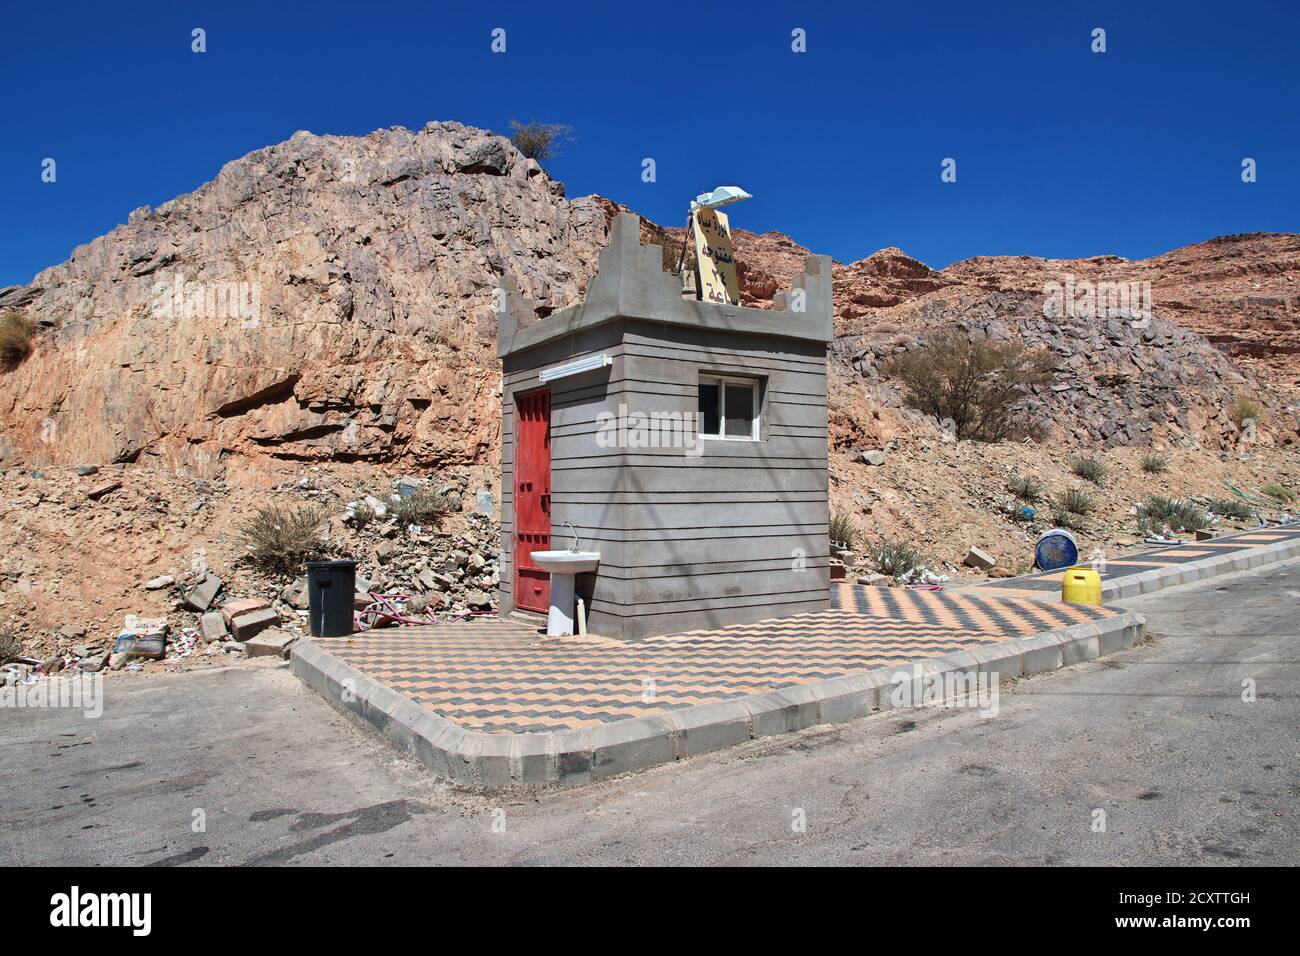 The toilet of mountains, Asir region, Saudi Arabia Stock Photo